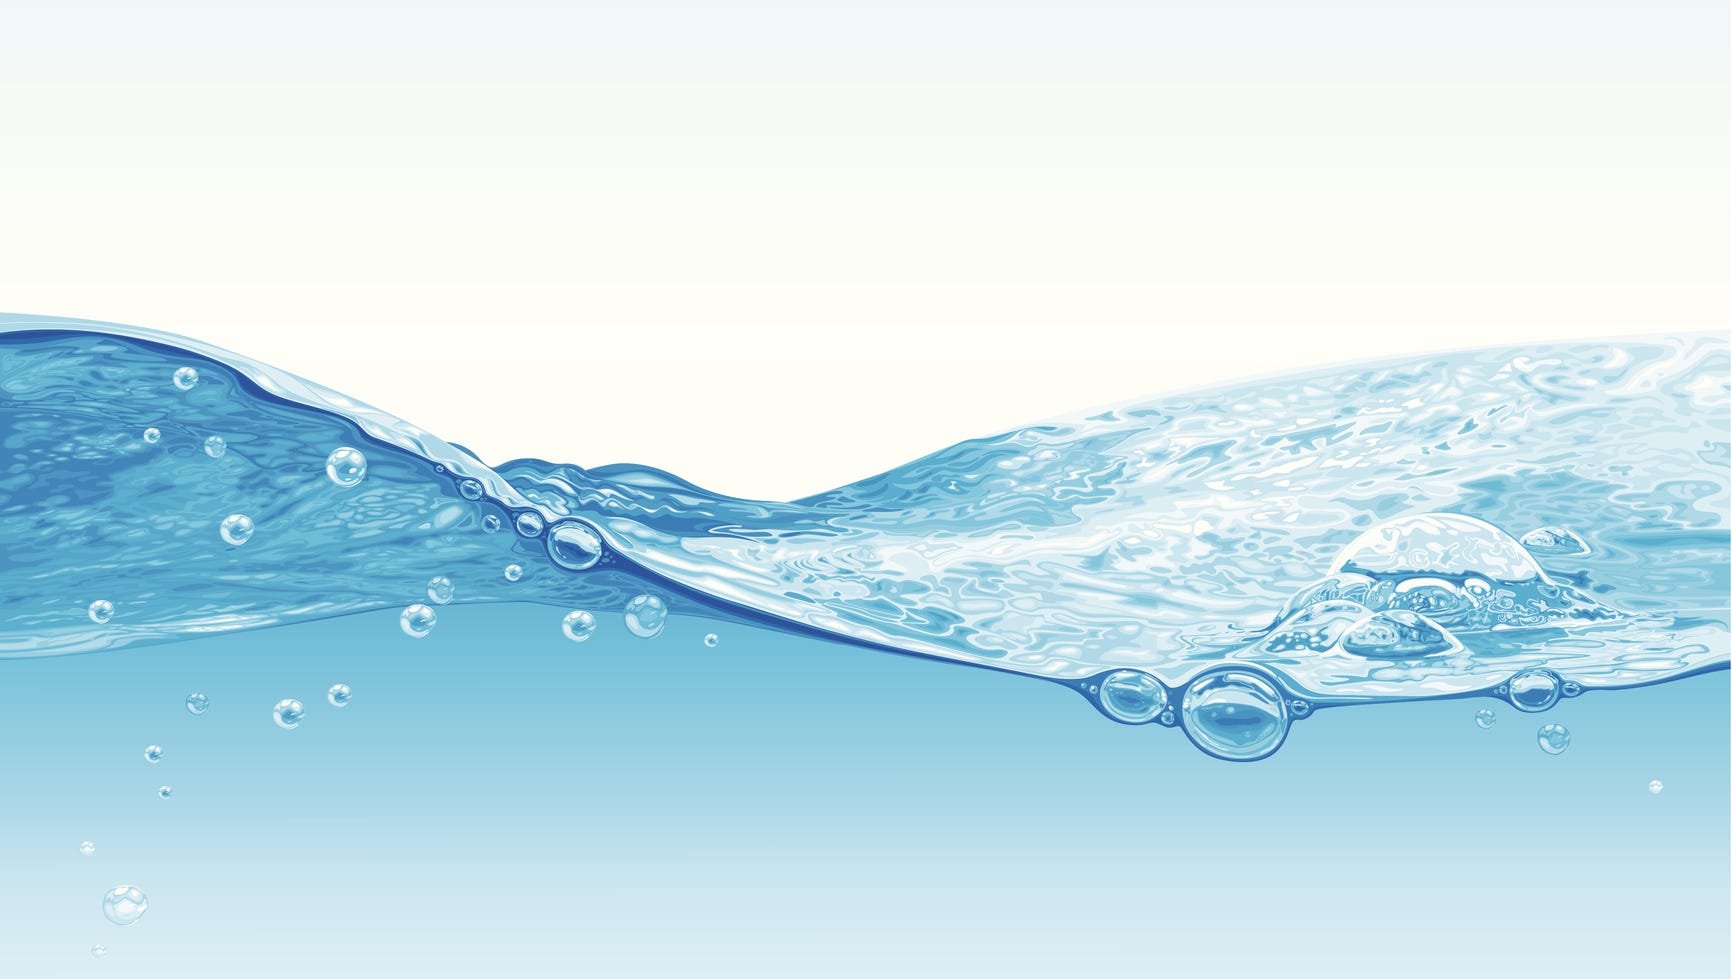 Đảm bảo lượng nước cho cơ thể là điều quan trọng để duy trì một sức khỏe tốt và sự tập trung trong cuộc sống. Hình ảnh về cách cung cấp đủ nước cho cơ thể sẽ đem lại cho bạn kiến thức hữu ích và thói quen tốt cho cuộc sống hàng ngày. 